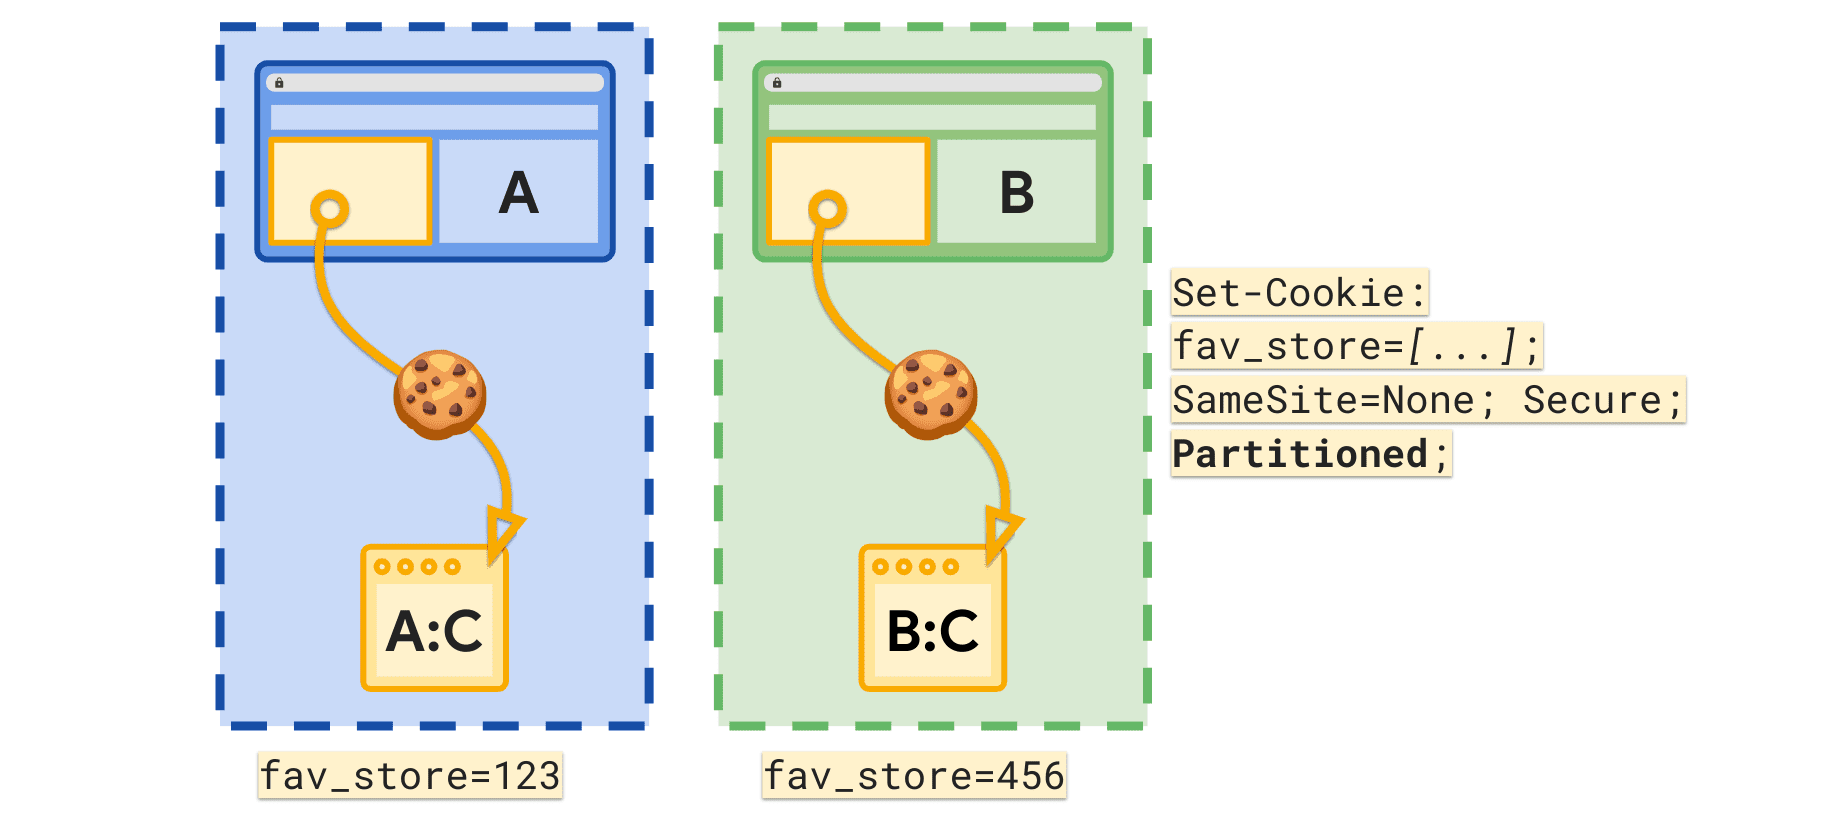 ویژگی Partitioned امکان تنظیم یک کوکی fav_store جداگانه را برای هر سایت سطح بالا فراهم می کند.